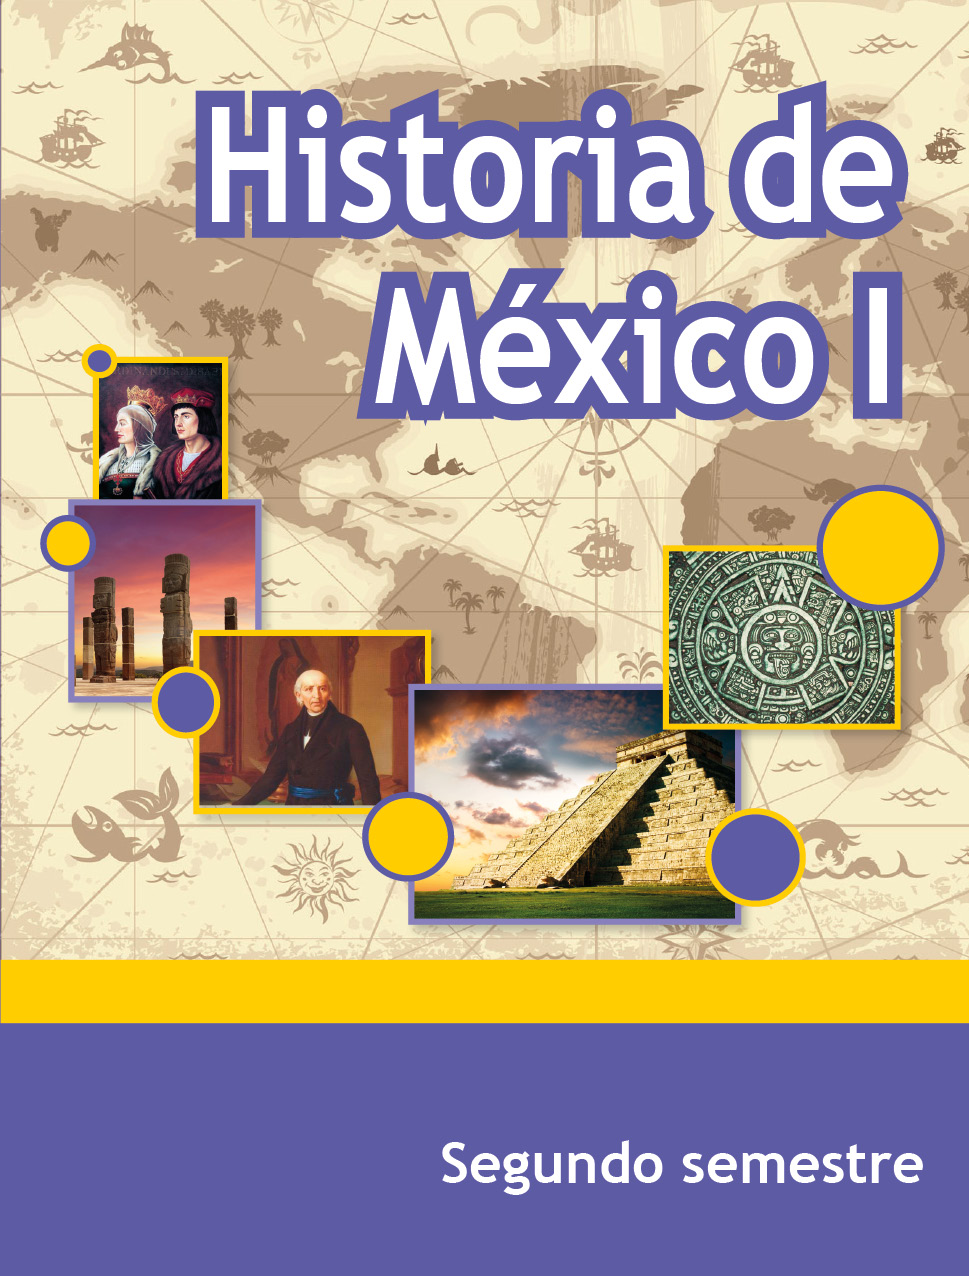 Historia de México I, Editorial: Secretaría de Educación Pública, Nivel: Telebachillerato, Grado: 2